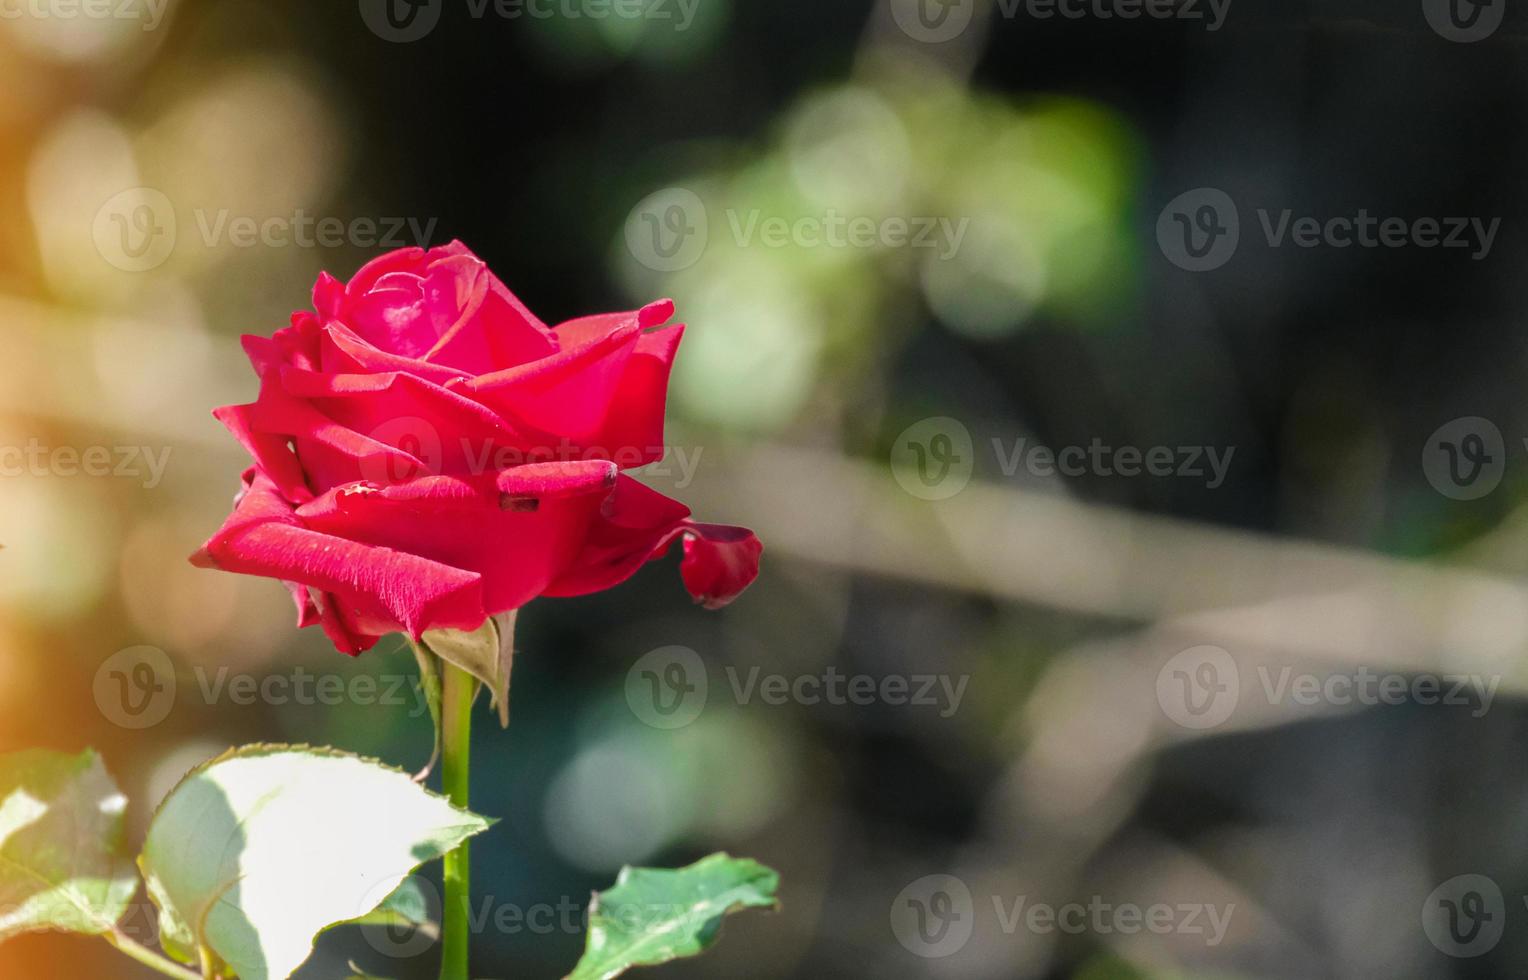 belleza flor suave rosa roja pétalos múltiples forma abstracta con hojas verdes en el jardín botánico. símbolo del amor en el día de san valentín. suave aroma fragante flora. foto